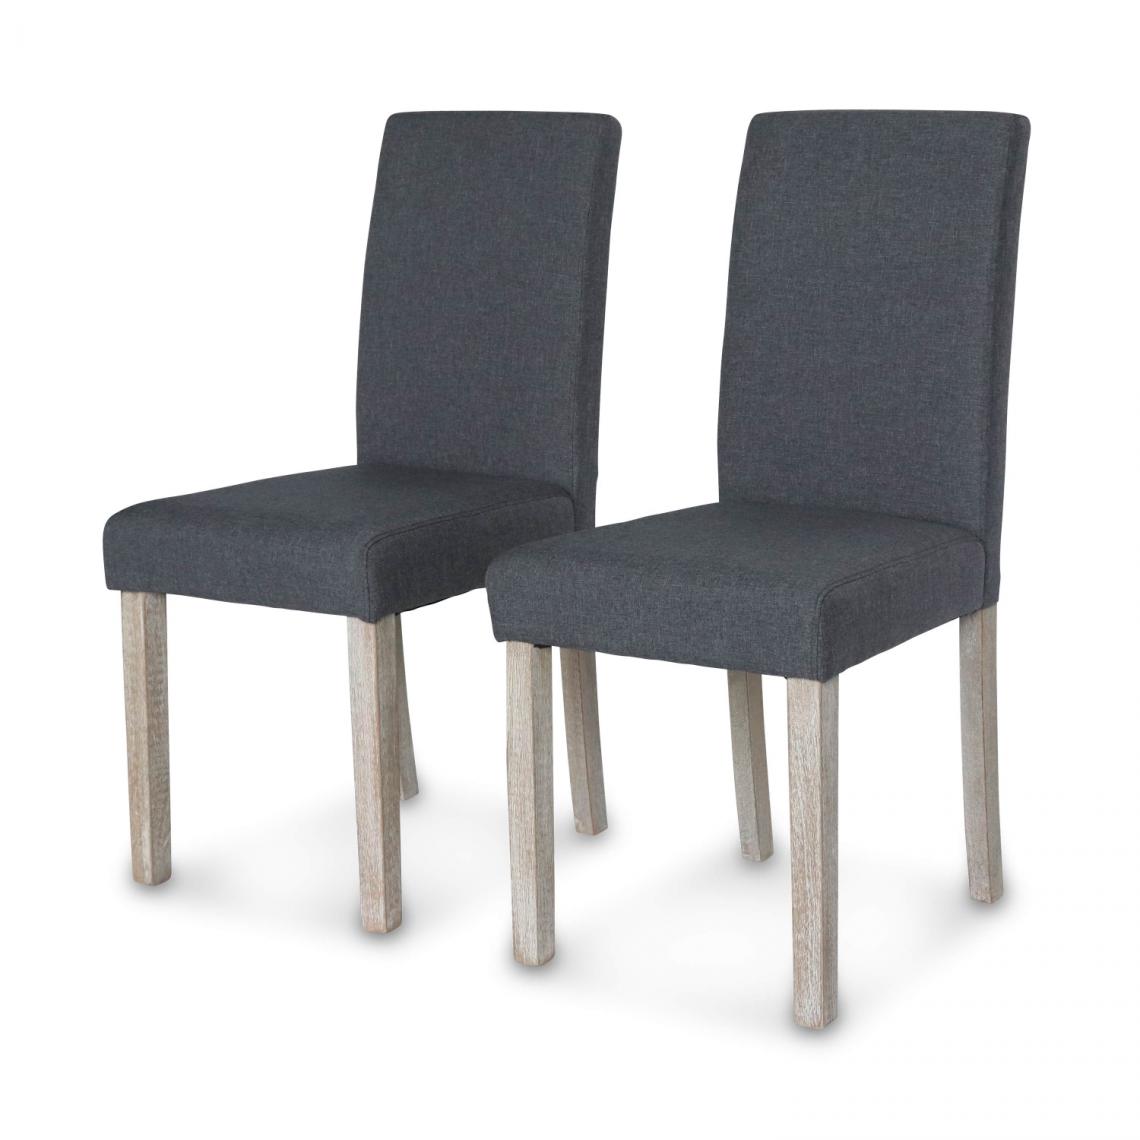 Alice'S Garden - Lot de 2 chaises - Rita - chaises en tissu, pieds en bois cérusé - Chaises